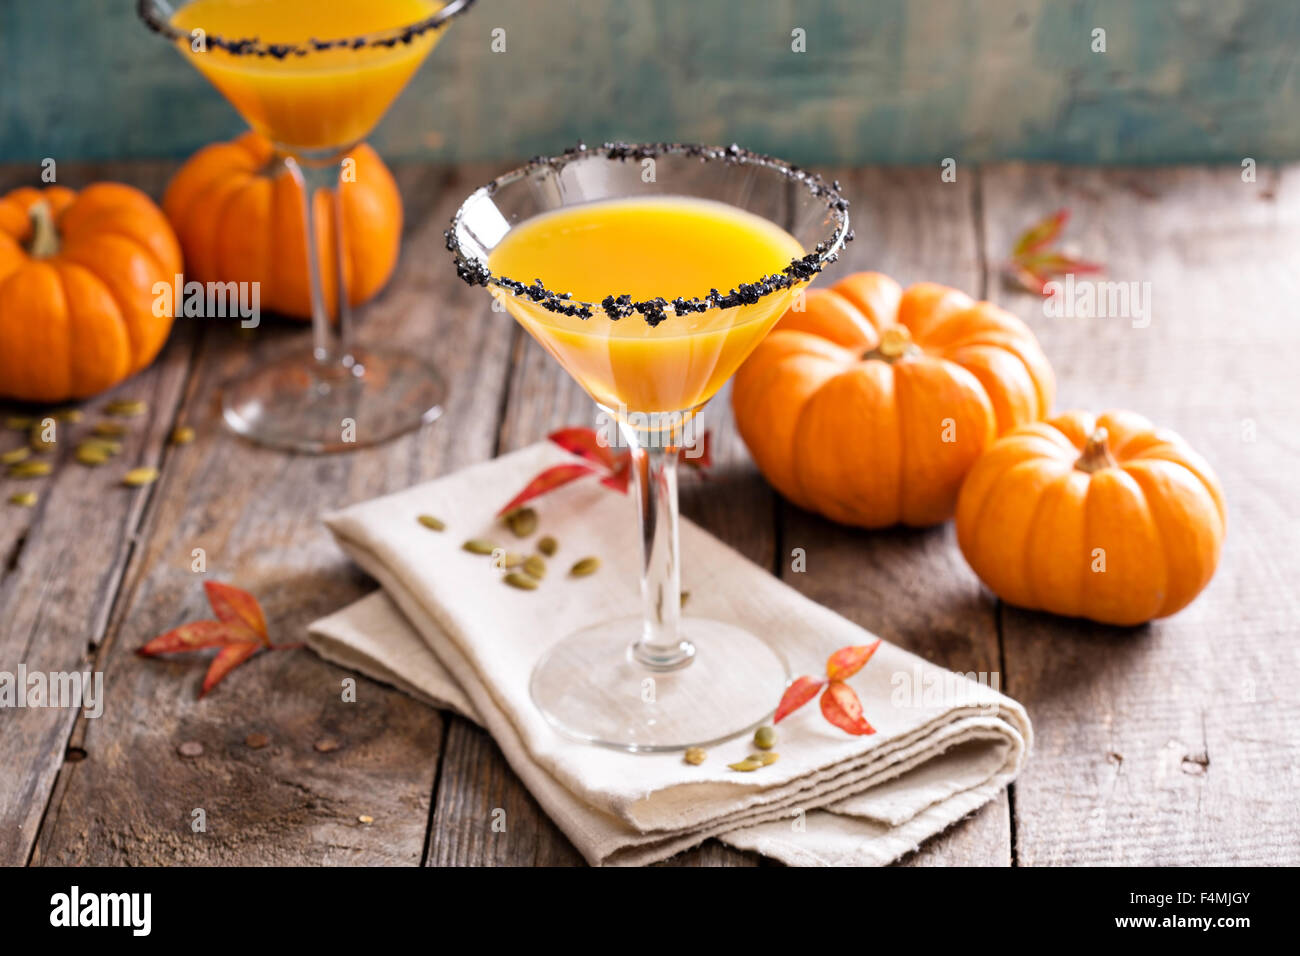 Pumpkintini avec cocktail martini potiron sel noir rim pour l'automne et l'halloween parties Banque D'Images